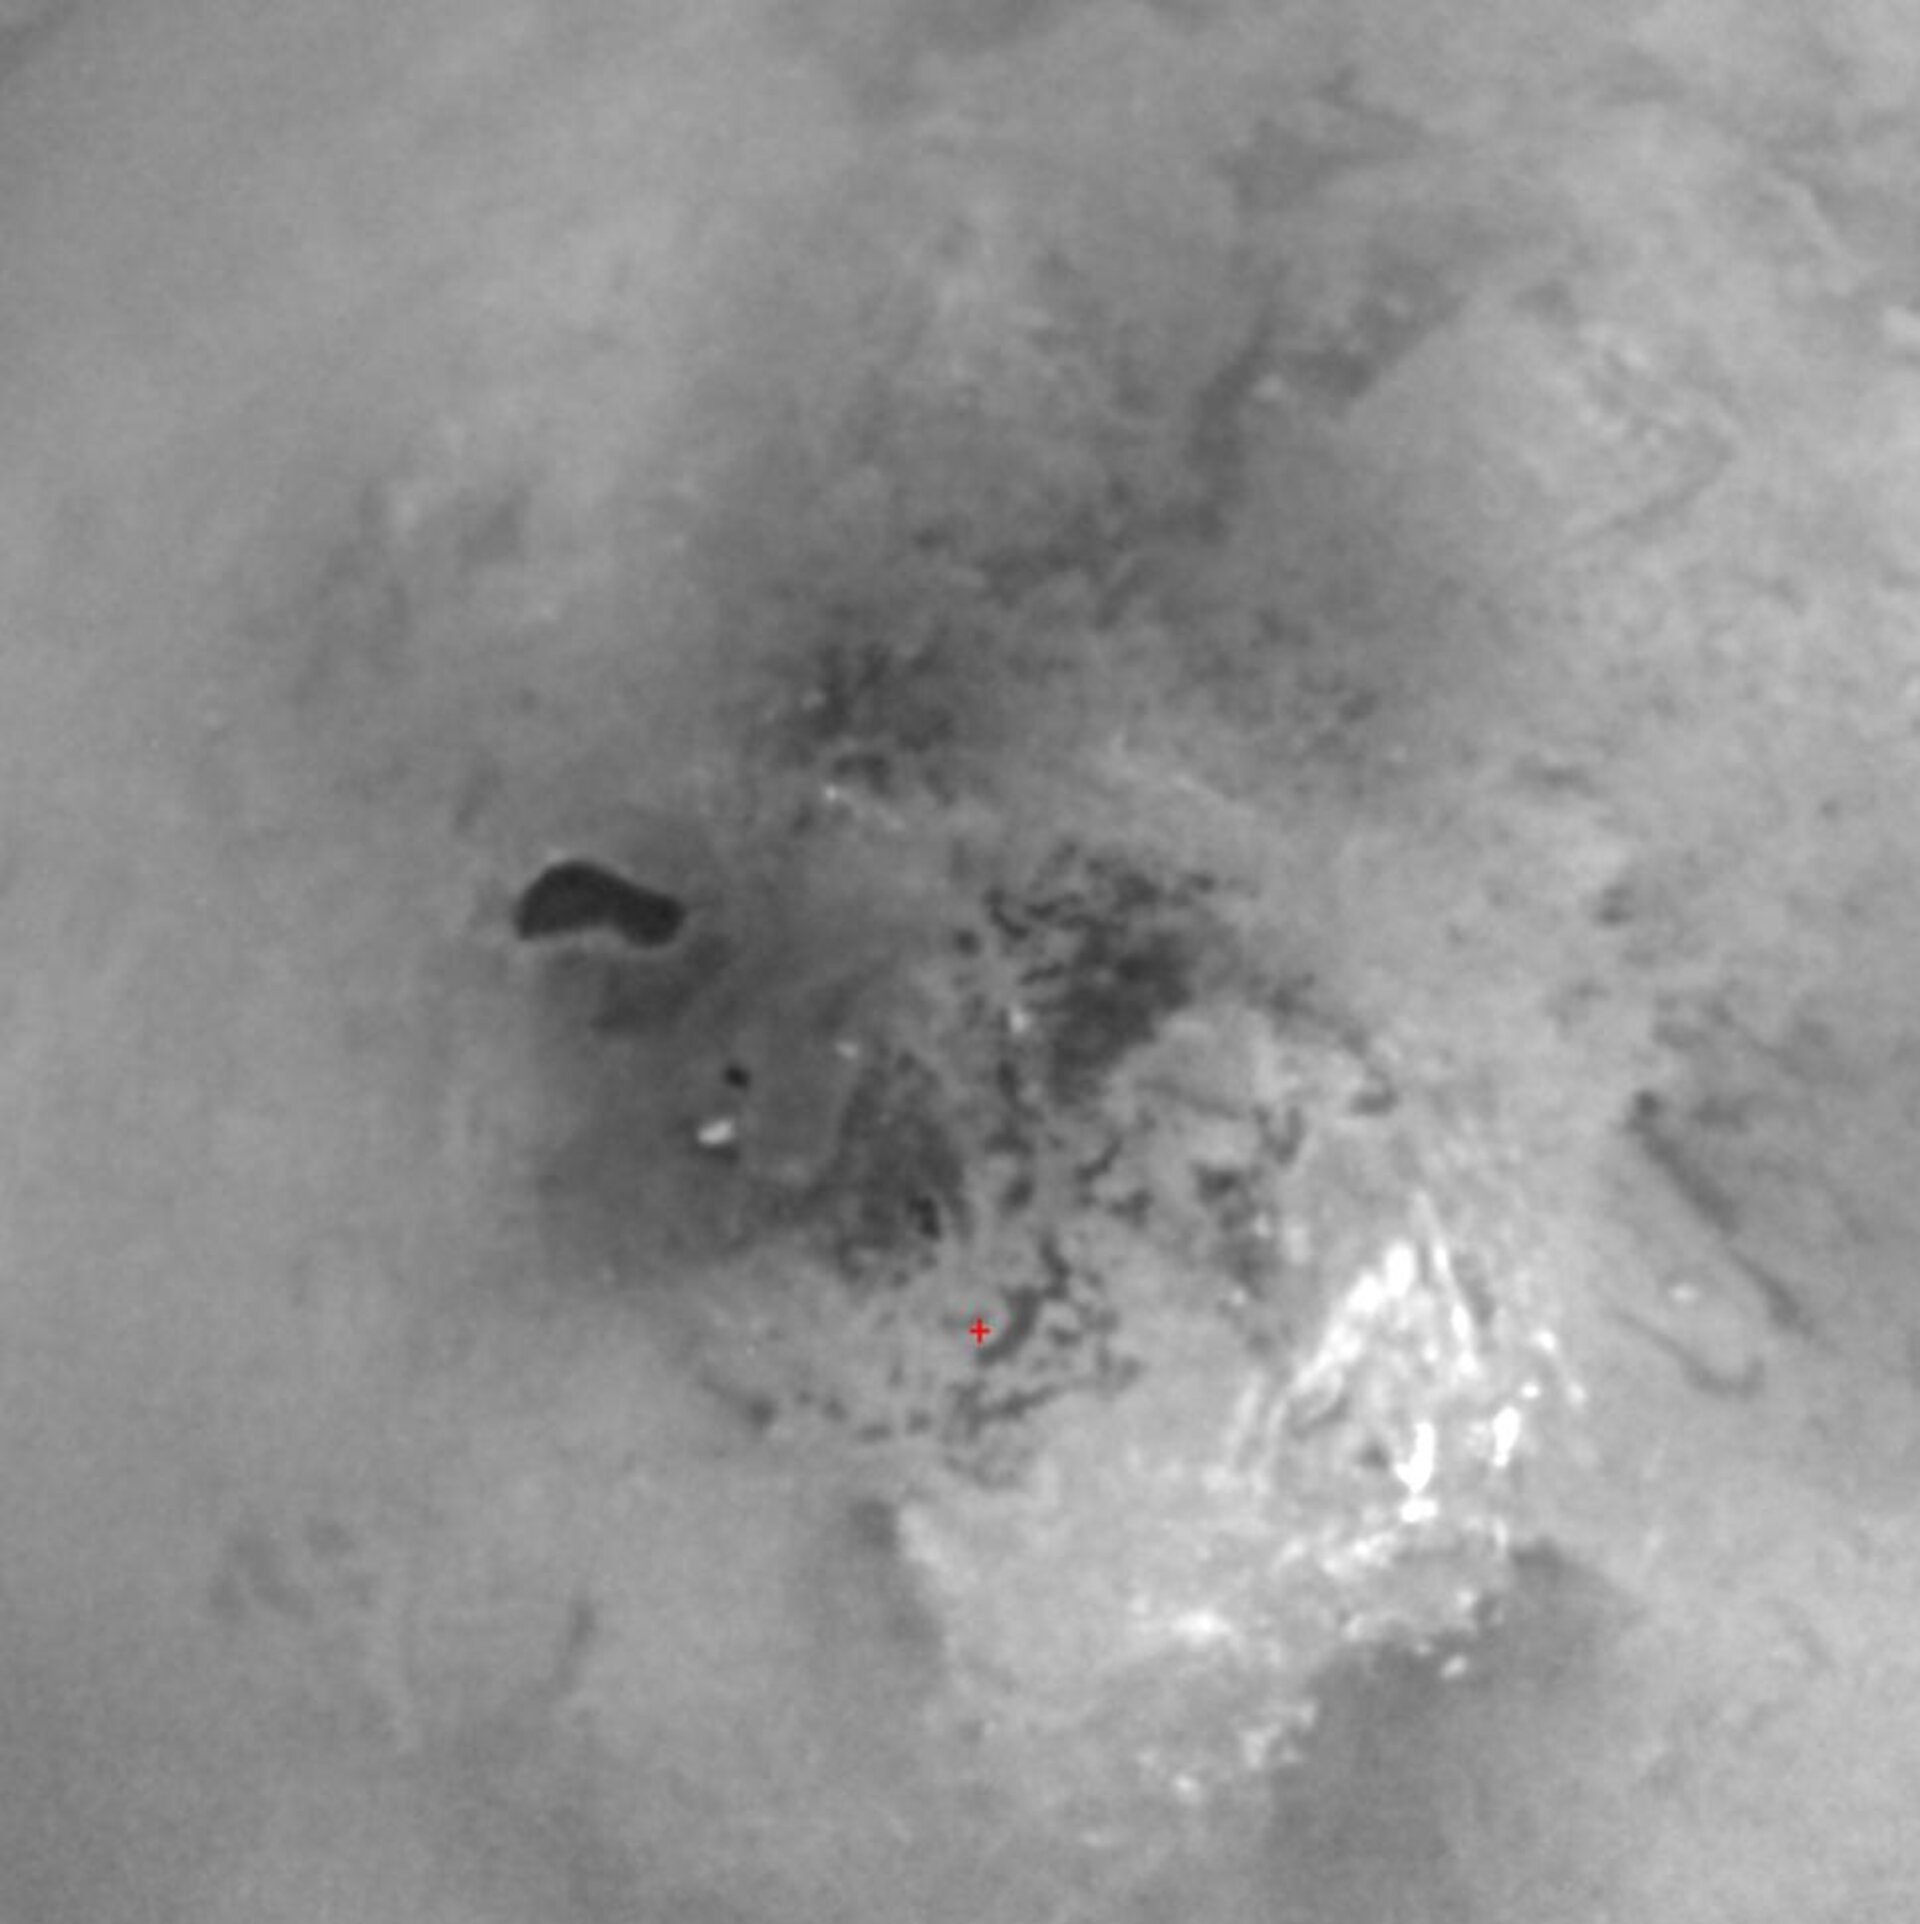 Hydrocarbon lake at Titan's south pole?